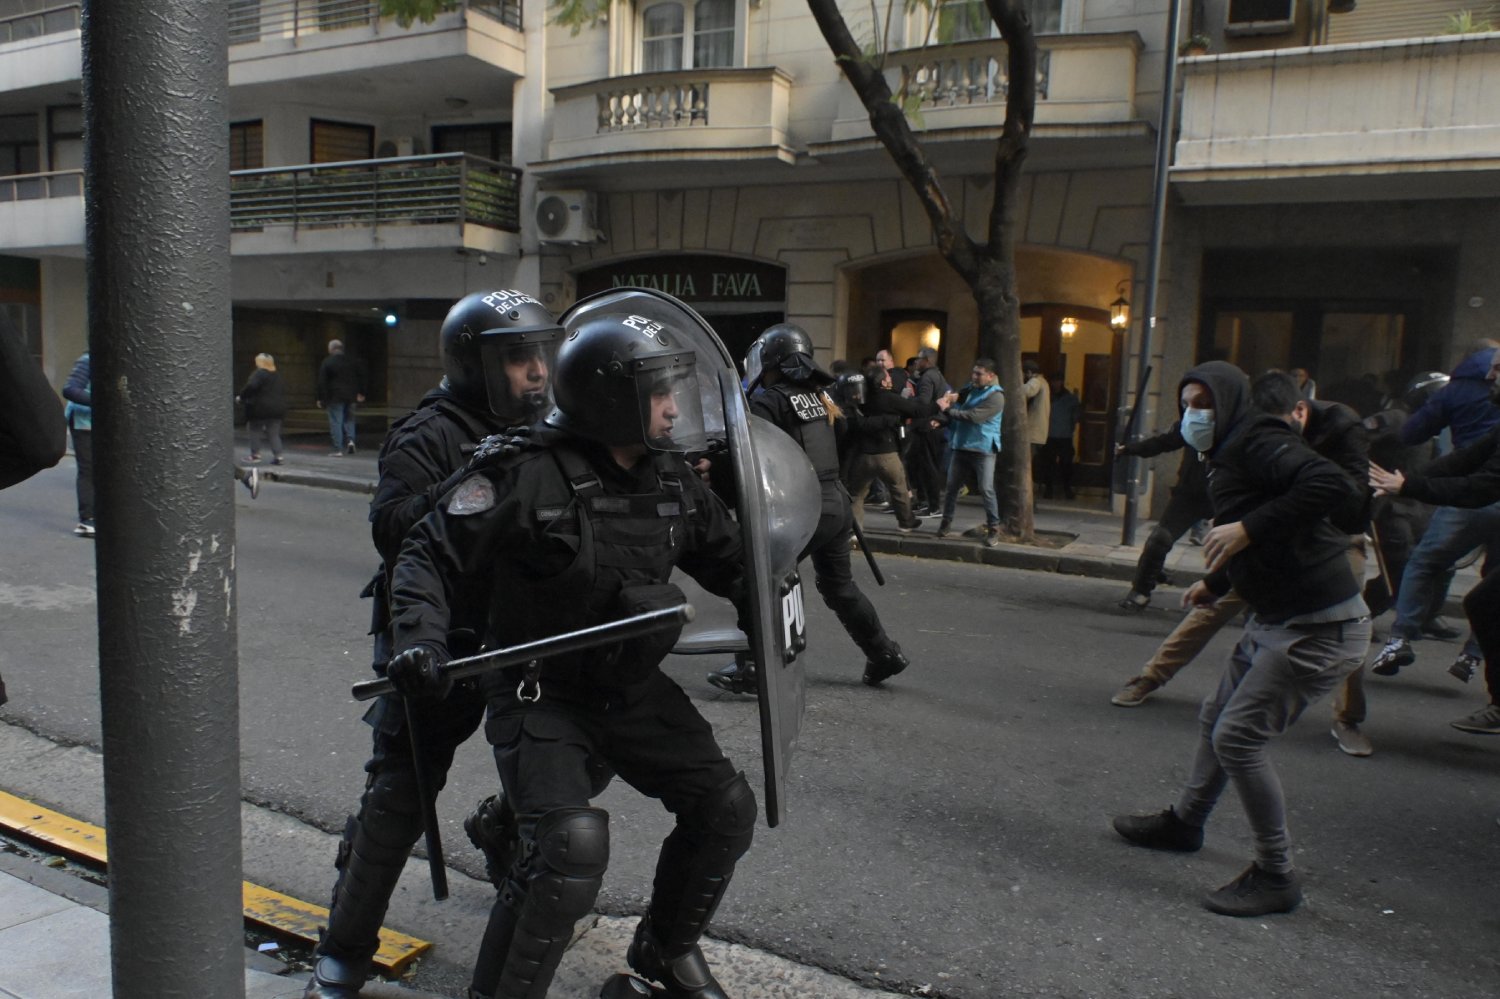 Ziliotto cuestionó la “autoritaria prohibición” de manifestar frente a la casa de CFK